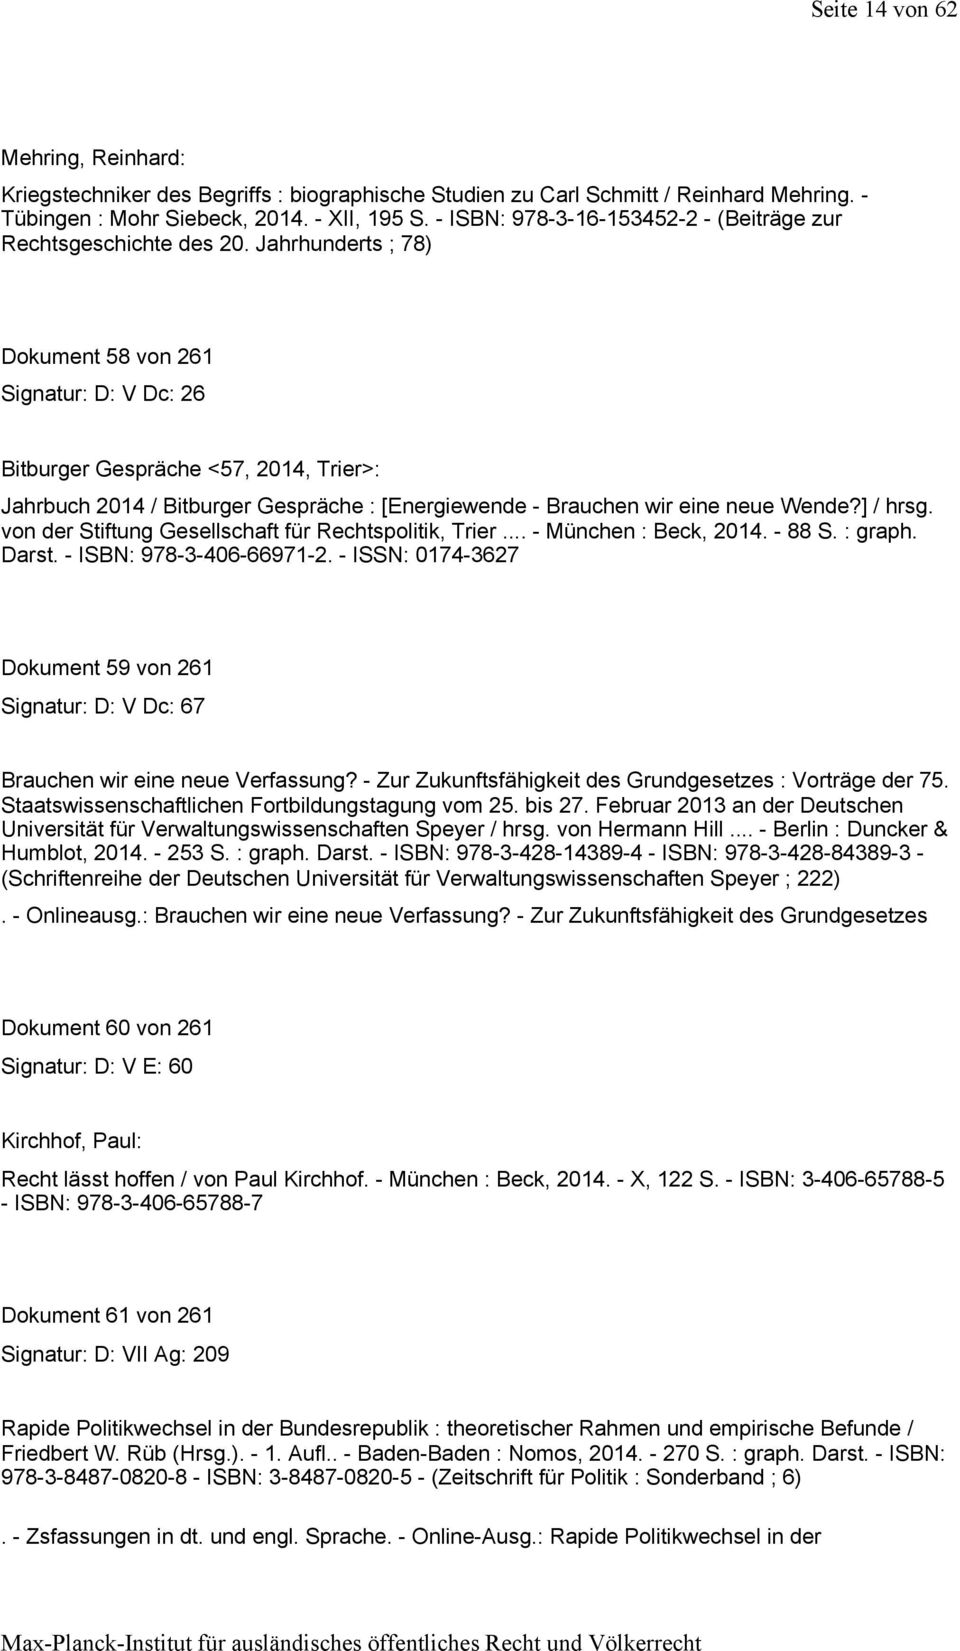 Jahrhunderts ; 78) Dokument 58 von 261 Signatur: D: V Dc: 26 Bitburger Gespräche <57, 2014, Trier>: Jahrbuch 2014 / Bitburger Gespräche : [Energiewende - Brauchen wir eine neue Wende?] / hrsg.